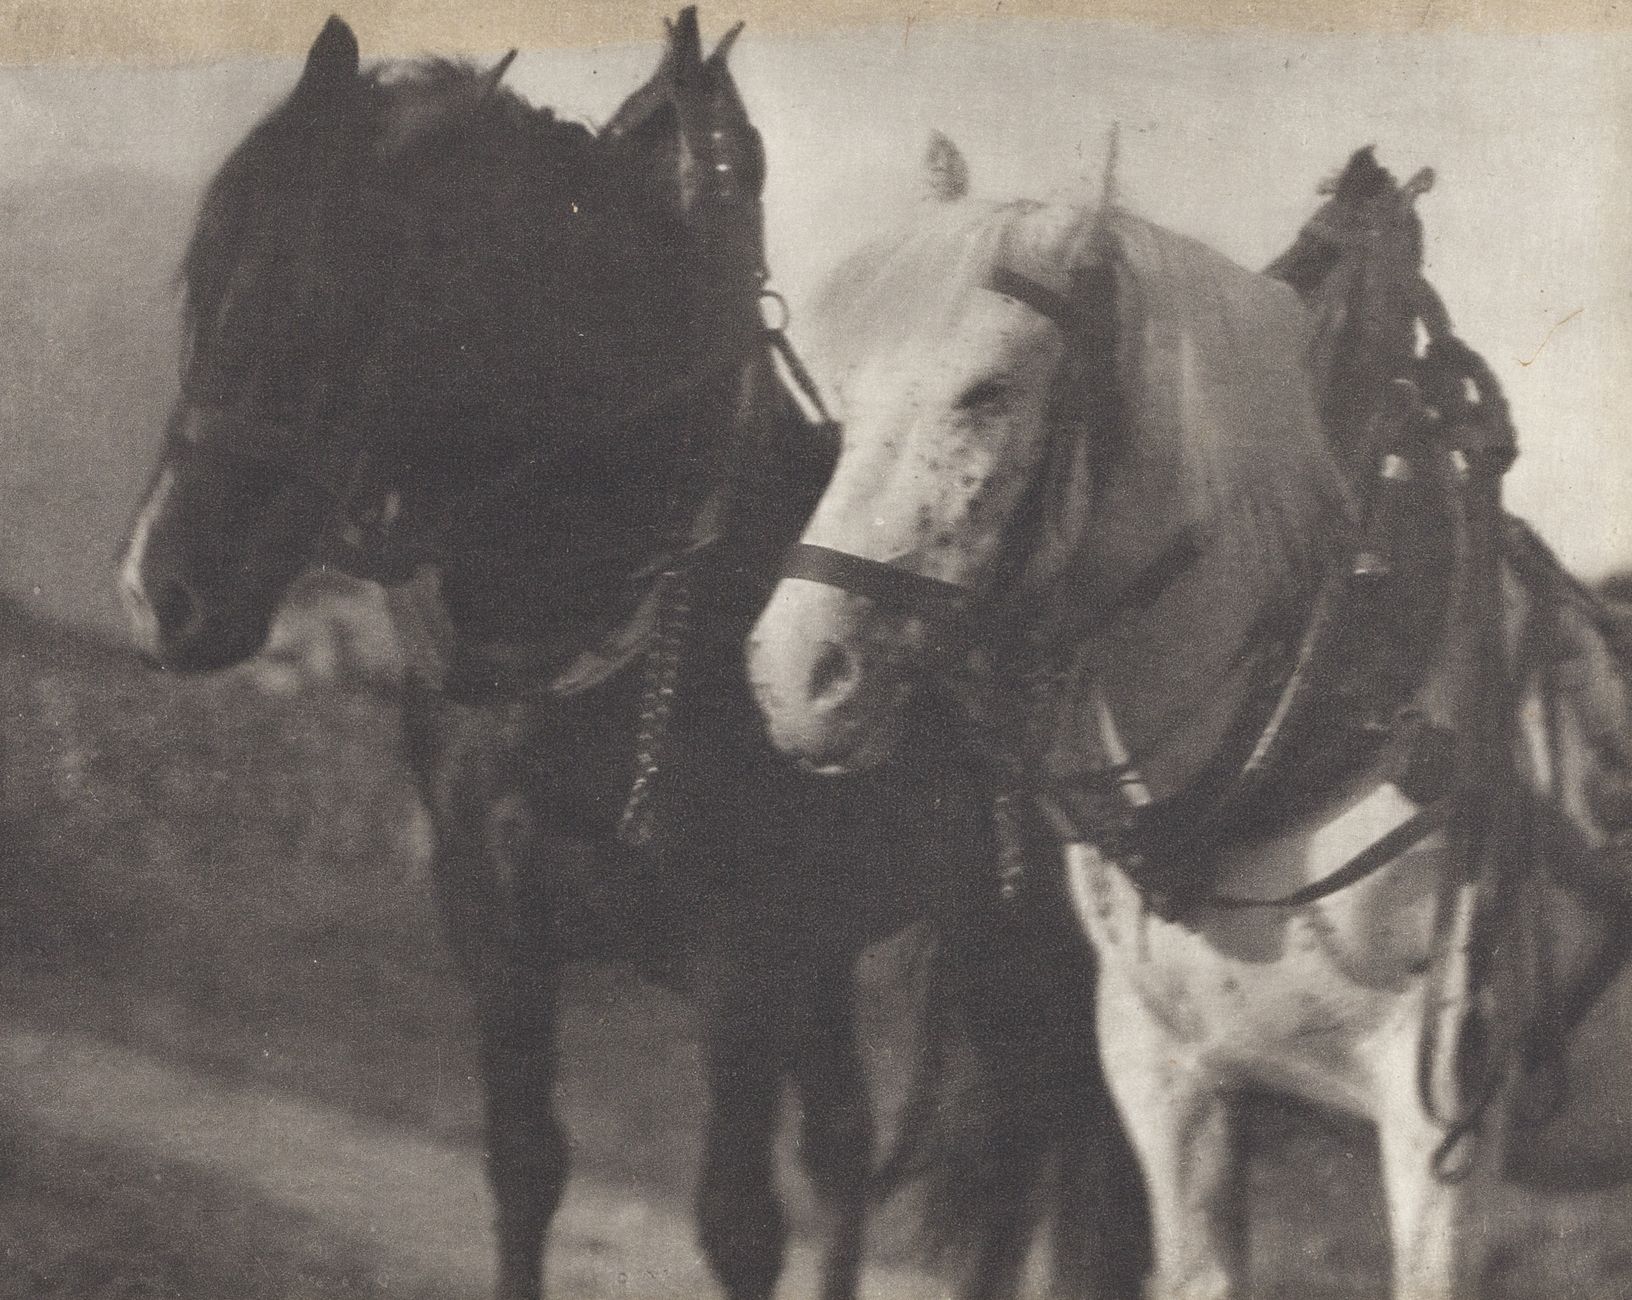 ALFRED STIEGLITZ (1864–1946) 
ALFRED STIEGLITZ (1864–1946)

'Horses', 1904

Imag&hellip;